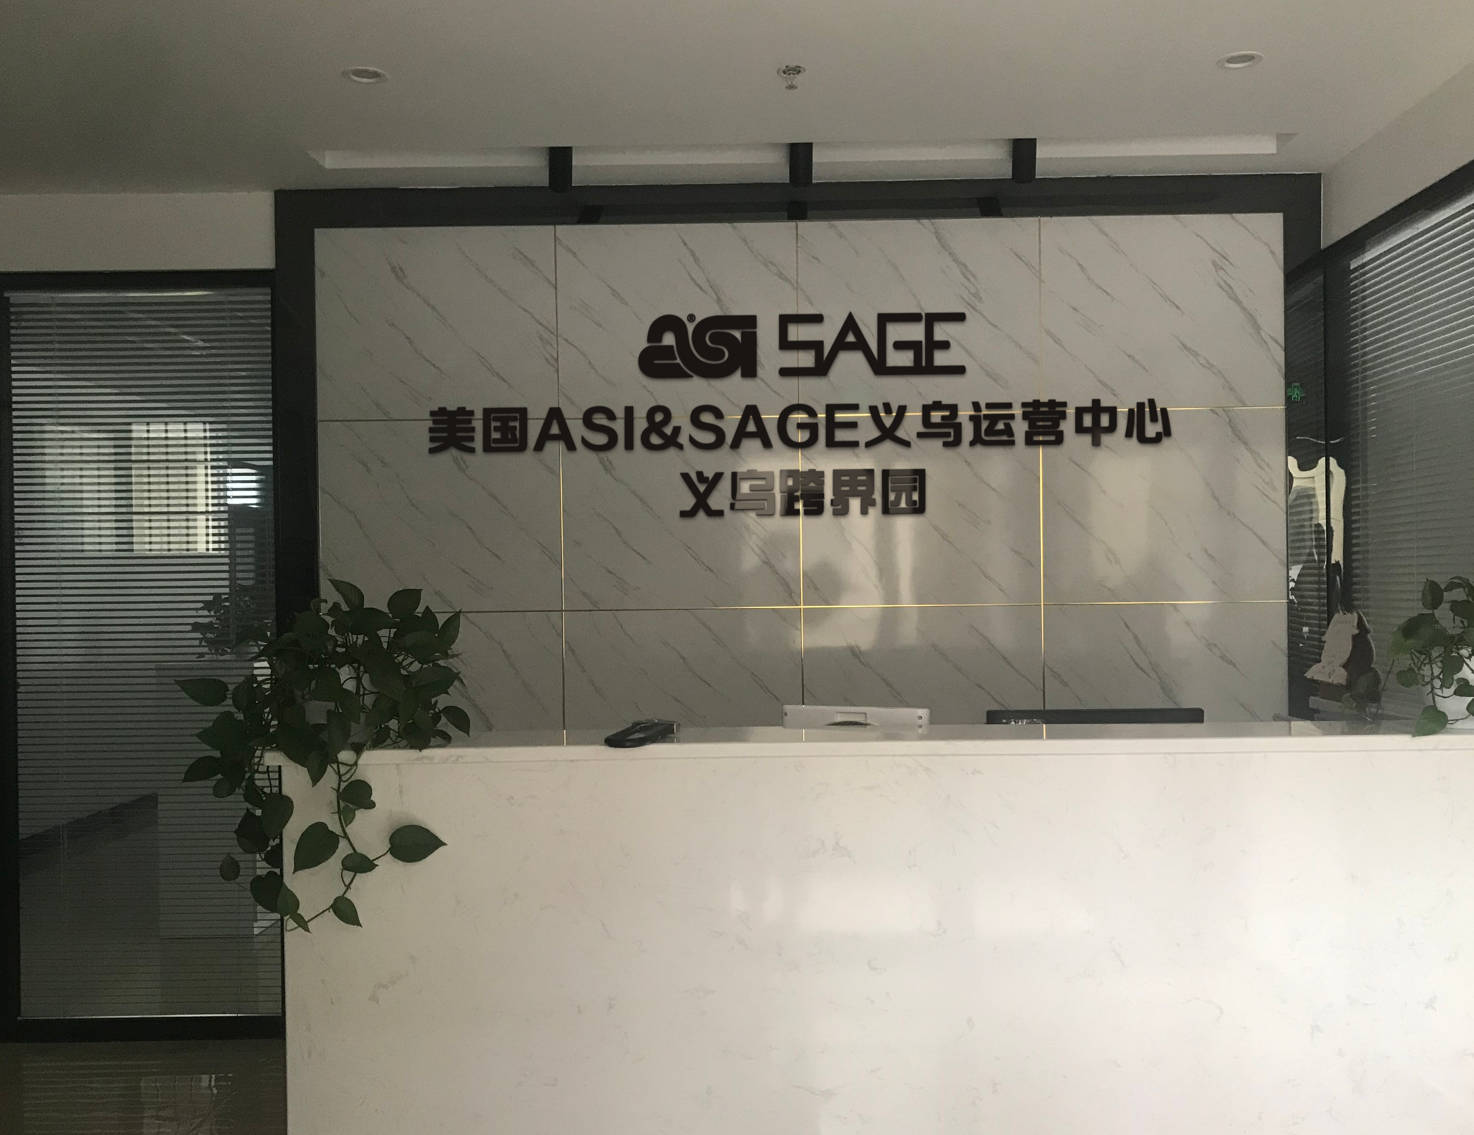 
义乌跨界园美国促销礼品行业ASI和SAGE平台运营中心-